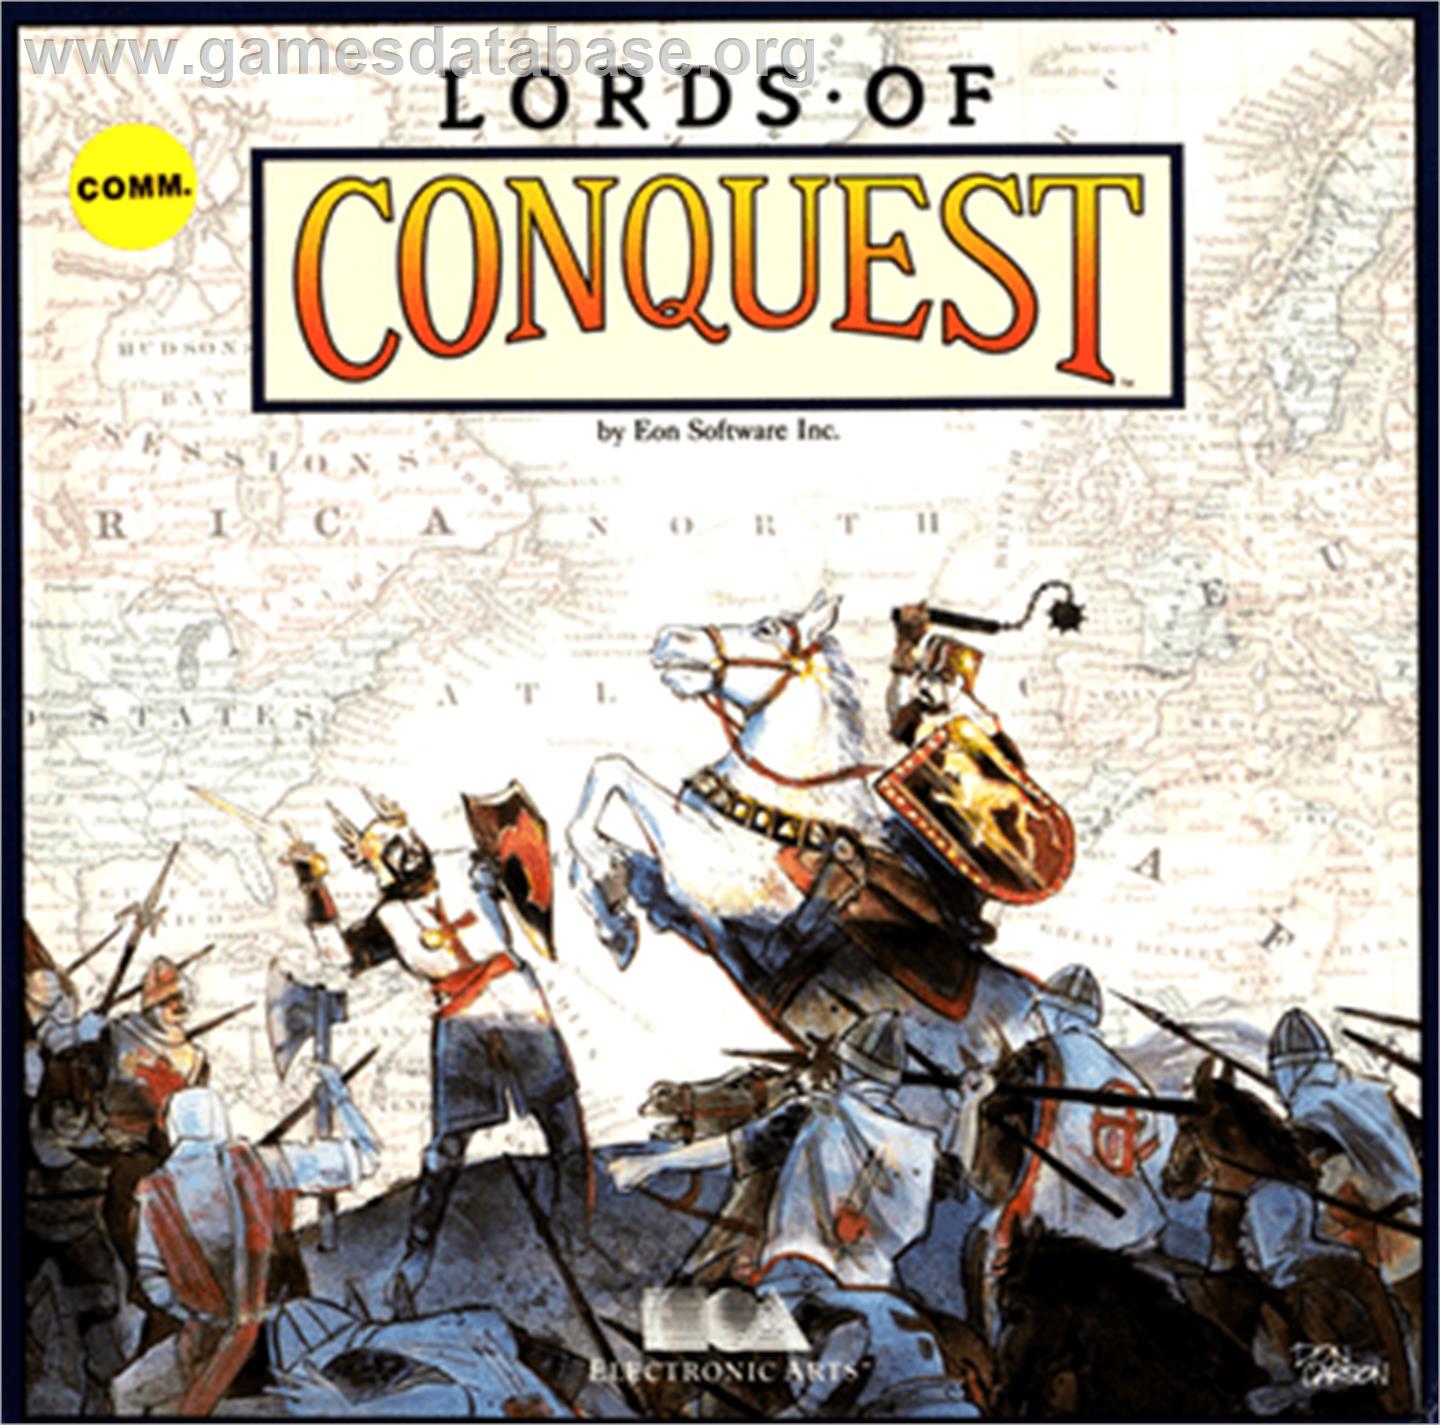 Lords of Conquest - Commodore 64 - Artwork - Box